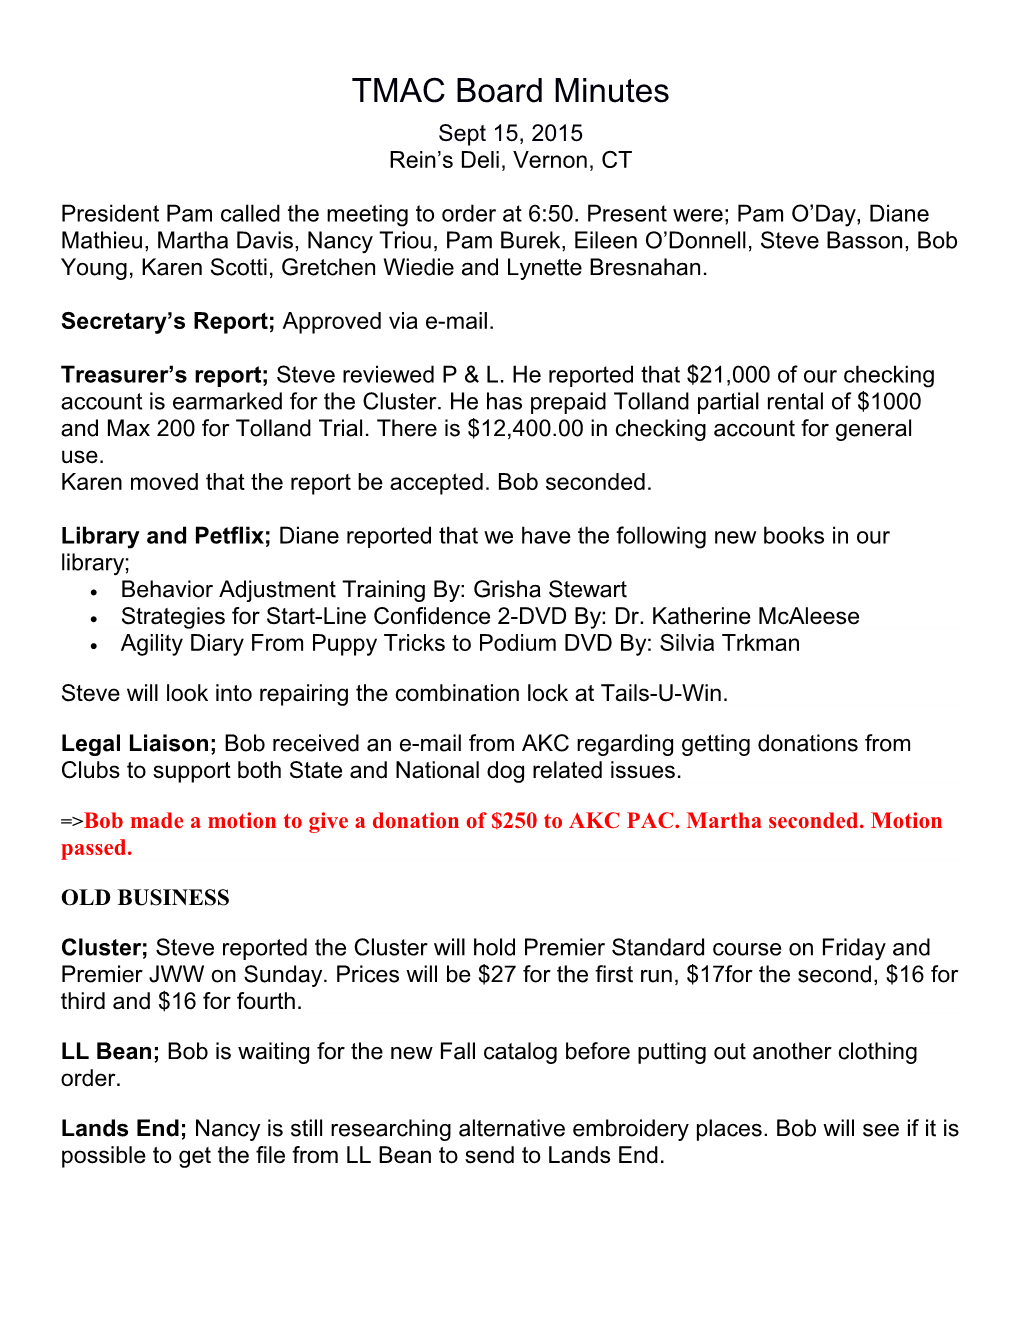 Secretary S Report; Approved Via E-Mail